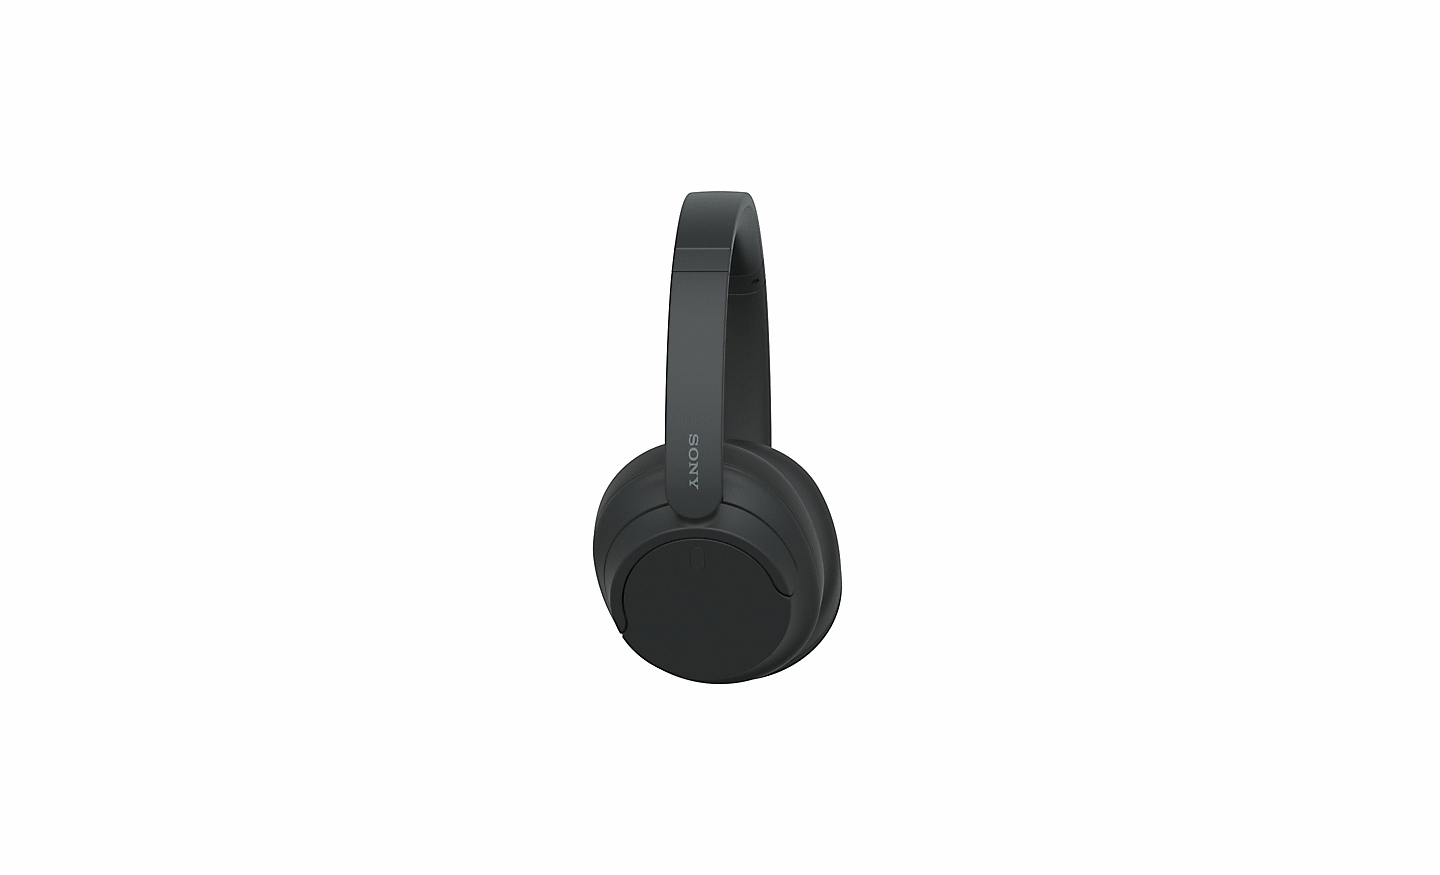 Imagen de unos audífonos negros WH-CH720 de Sony sobre un fondo blanco